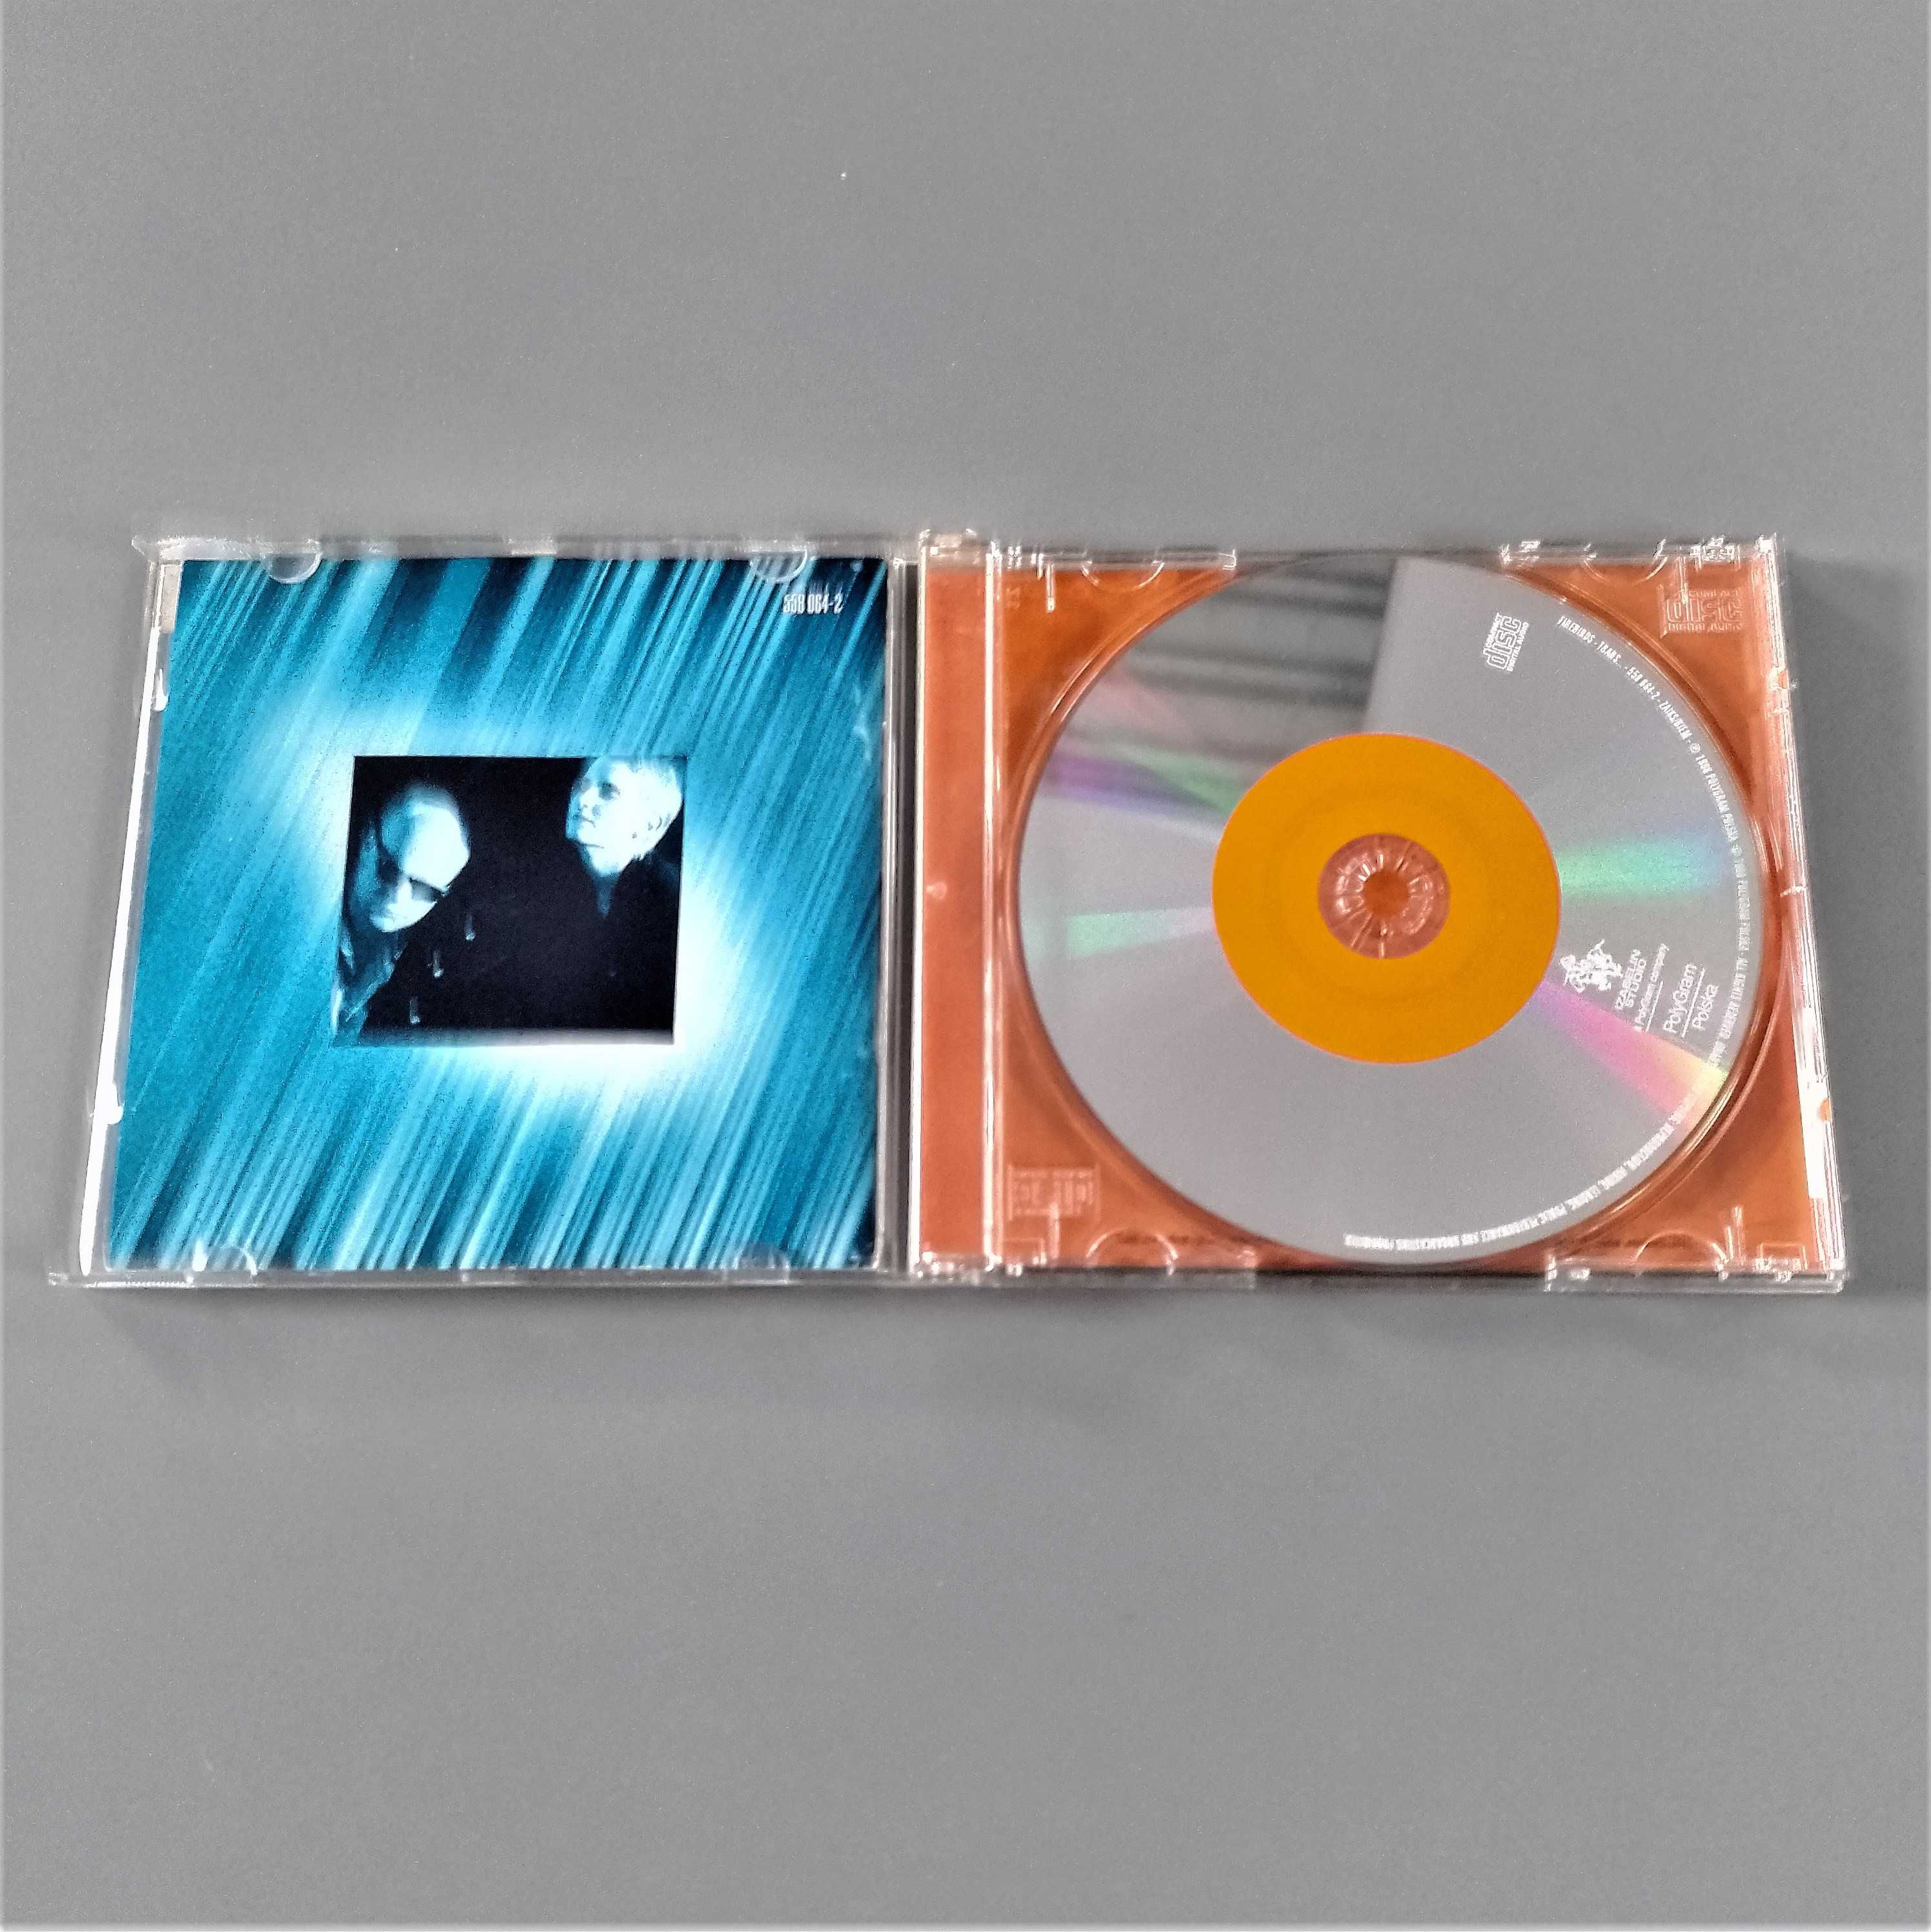 Płyta Firebirds "Trans", CD, 1998, unikat, Joanna Prykowska